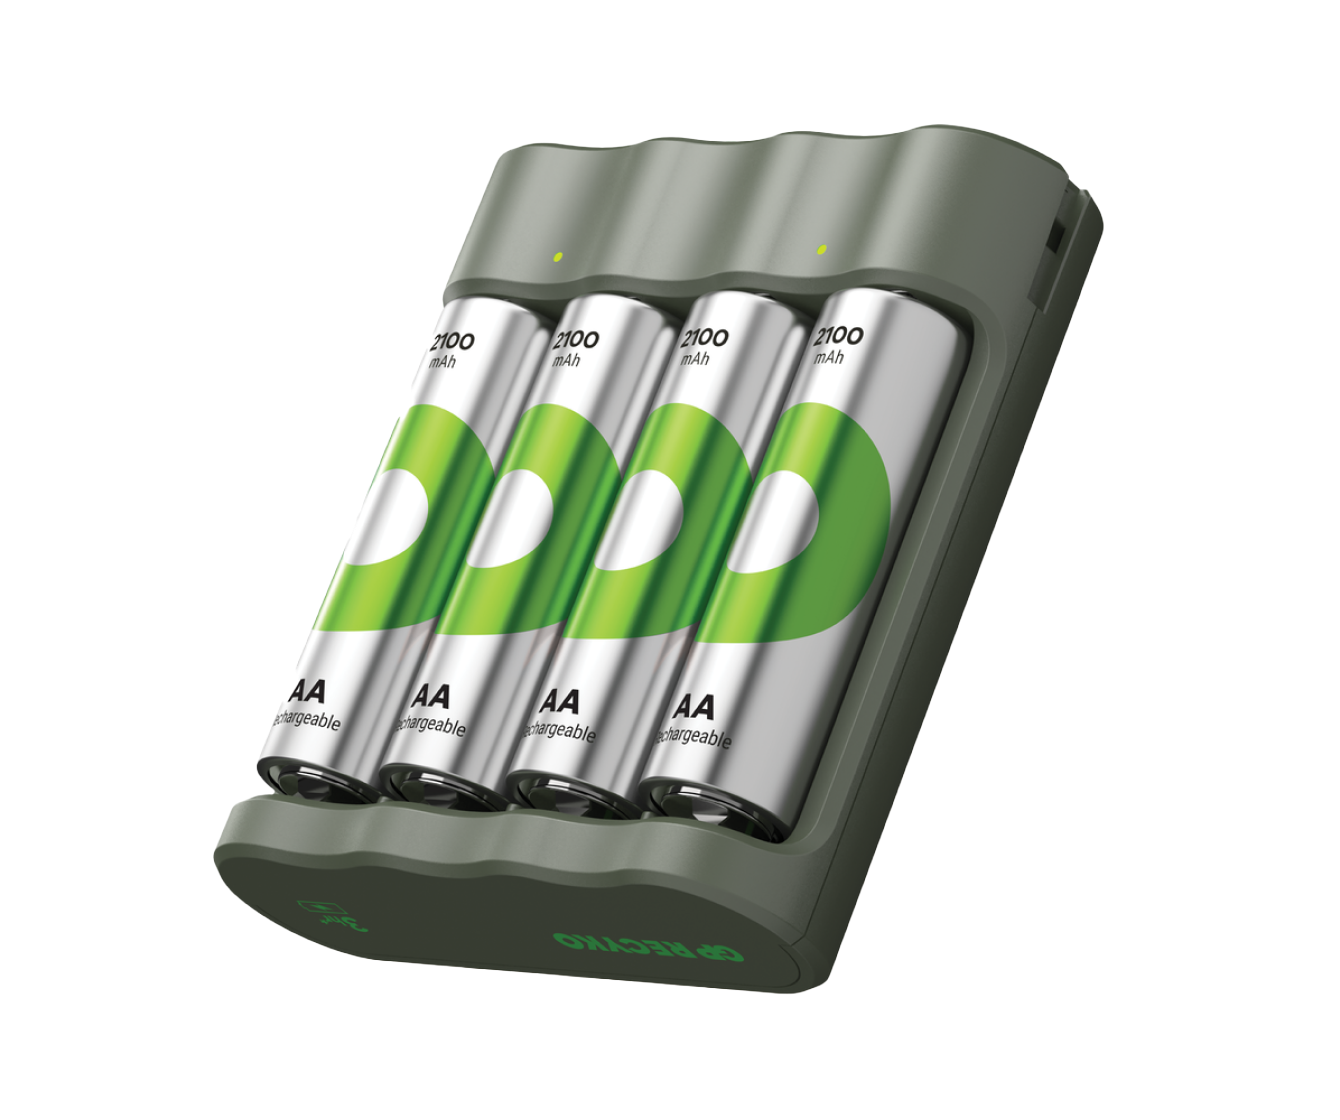 GP Batteries Chargeur USB « GP B421 » avec station d'accueil et 4 piles  rechargeables Mignon AA 2100 mAh - acheter à prix économique chez OTTO  Office.